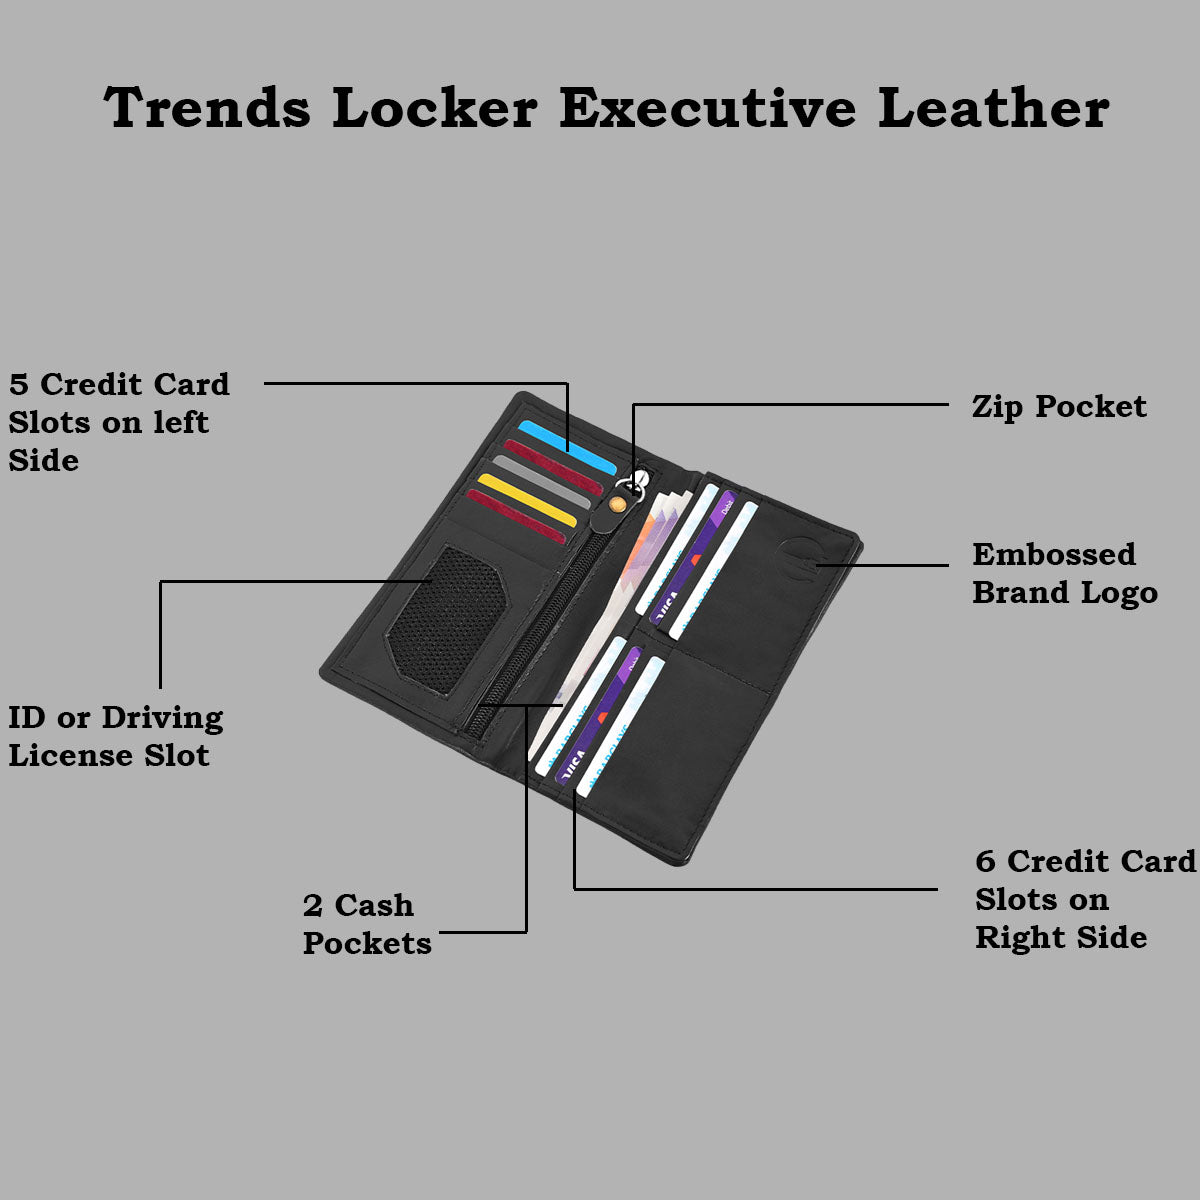 Bifold Genuine Leather Rfid Blocking Long Wallet